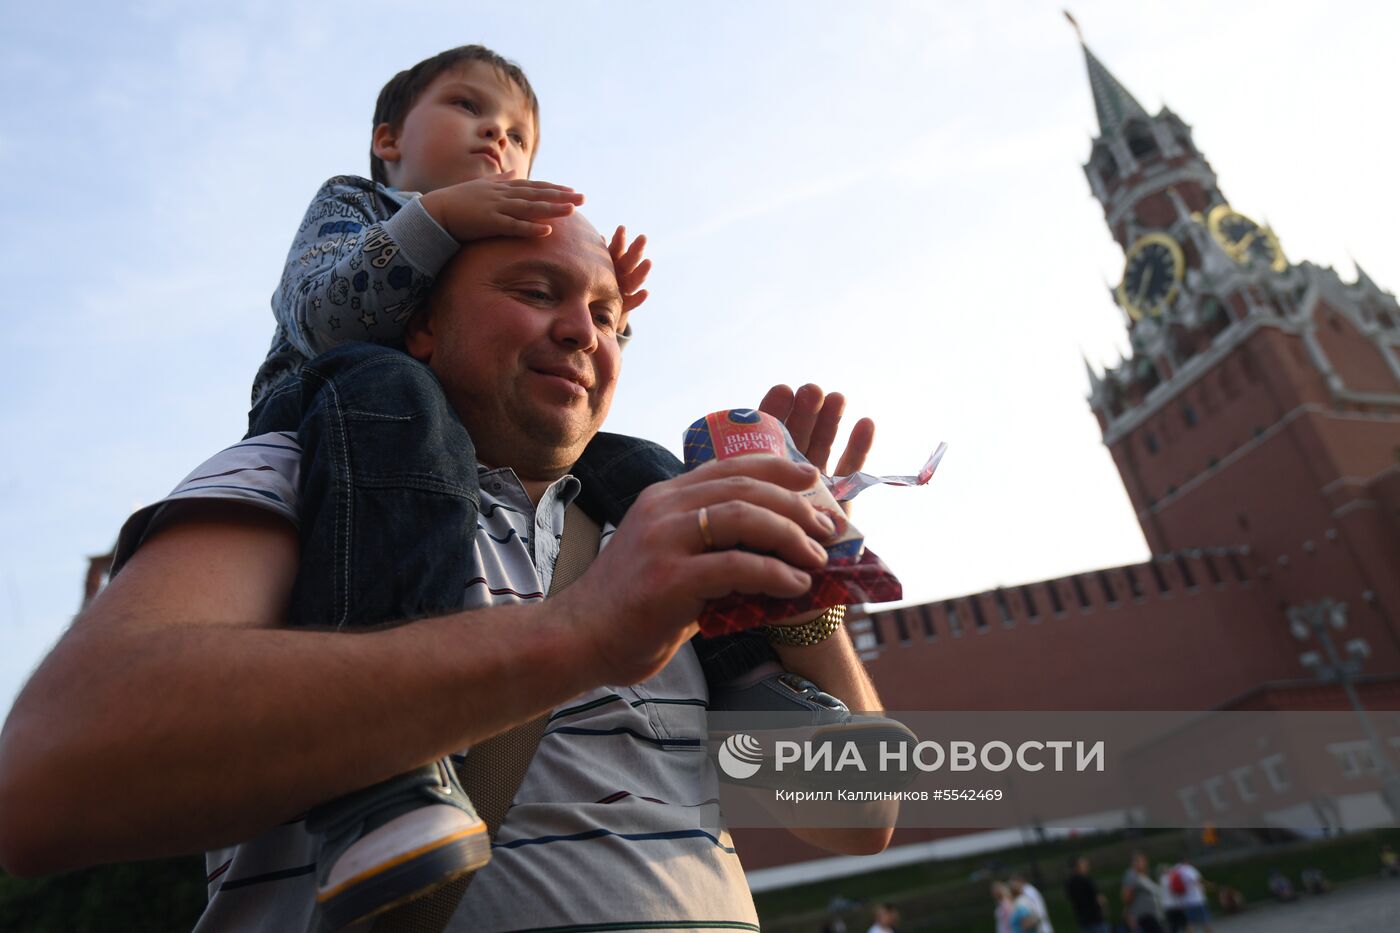 Продажа мороженого "Выбор Кремля" на Красной площади 